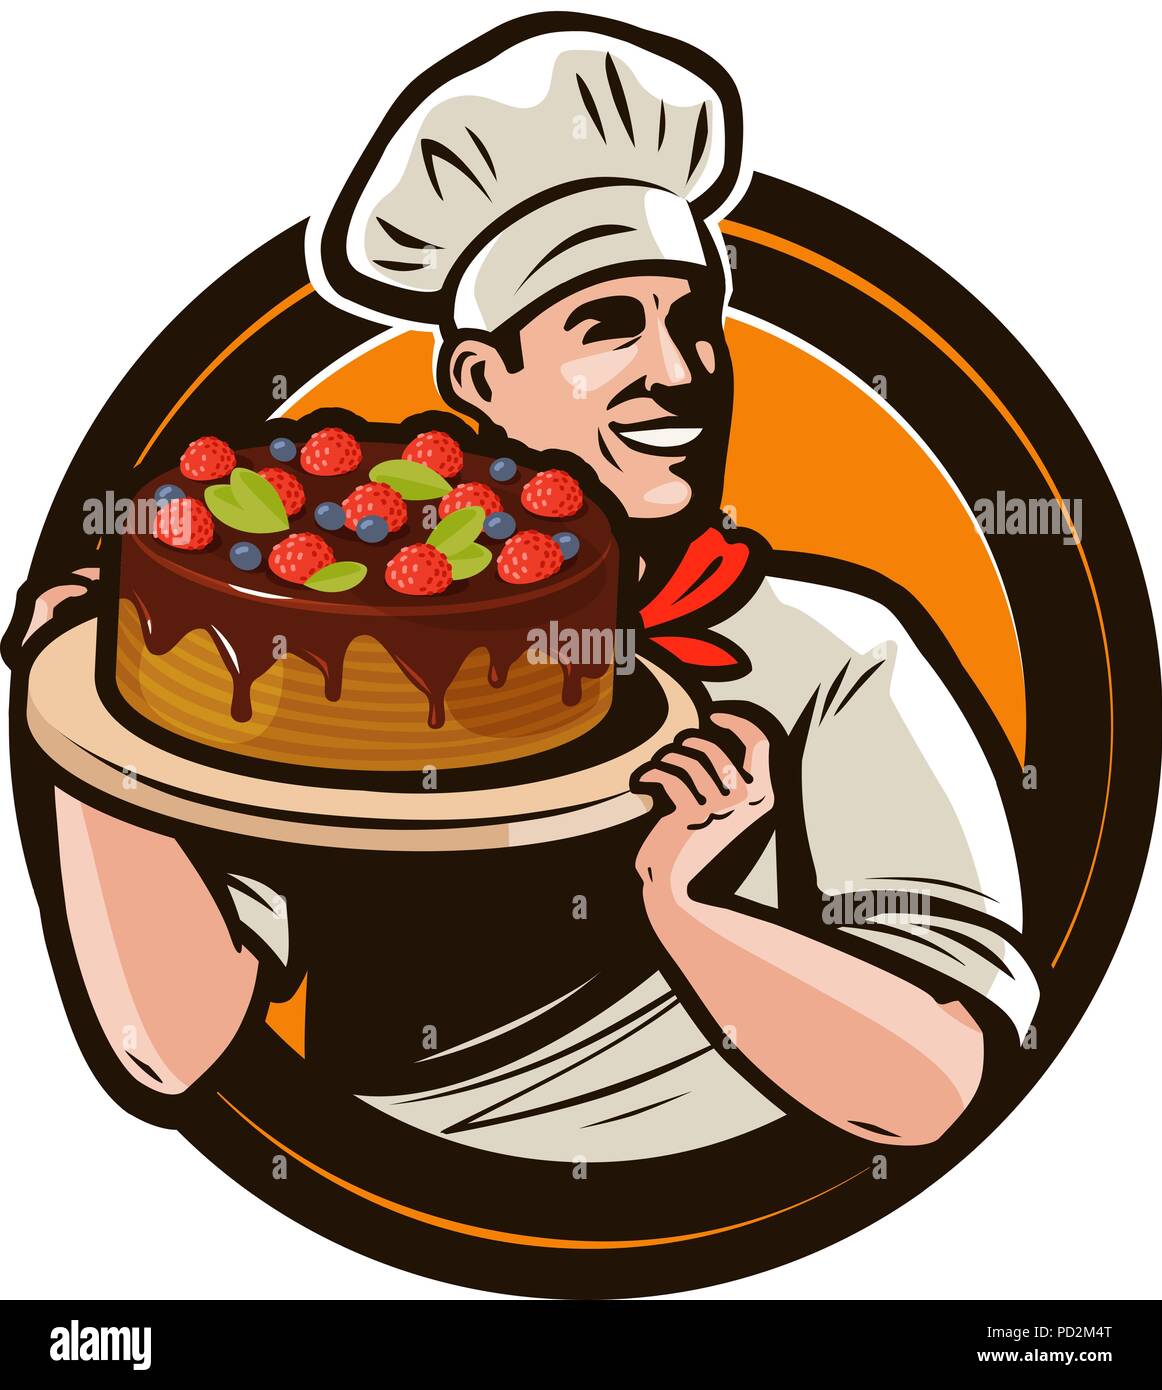 Konditorei Logo oder Label. Koch mit Kuchen auf ein Fach ein Cartoon Vector Illustration Stock Vektor